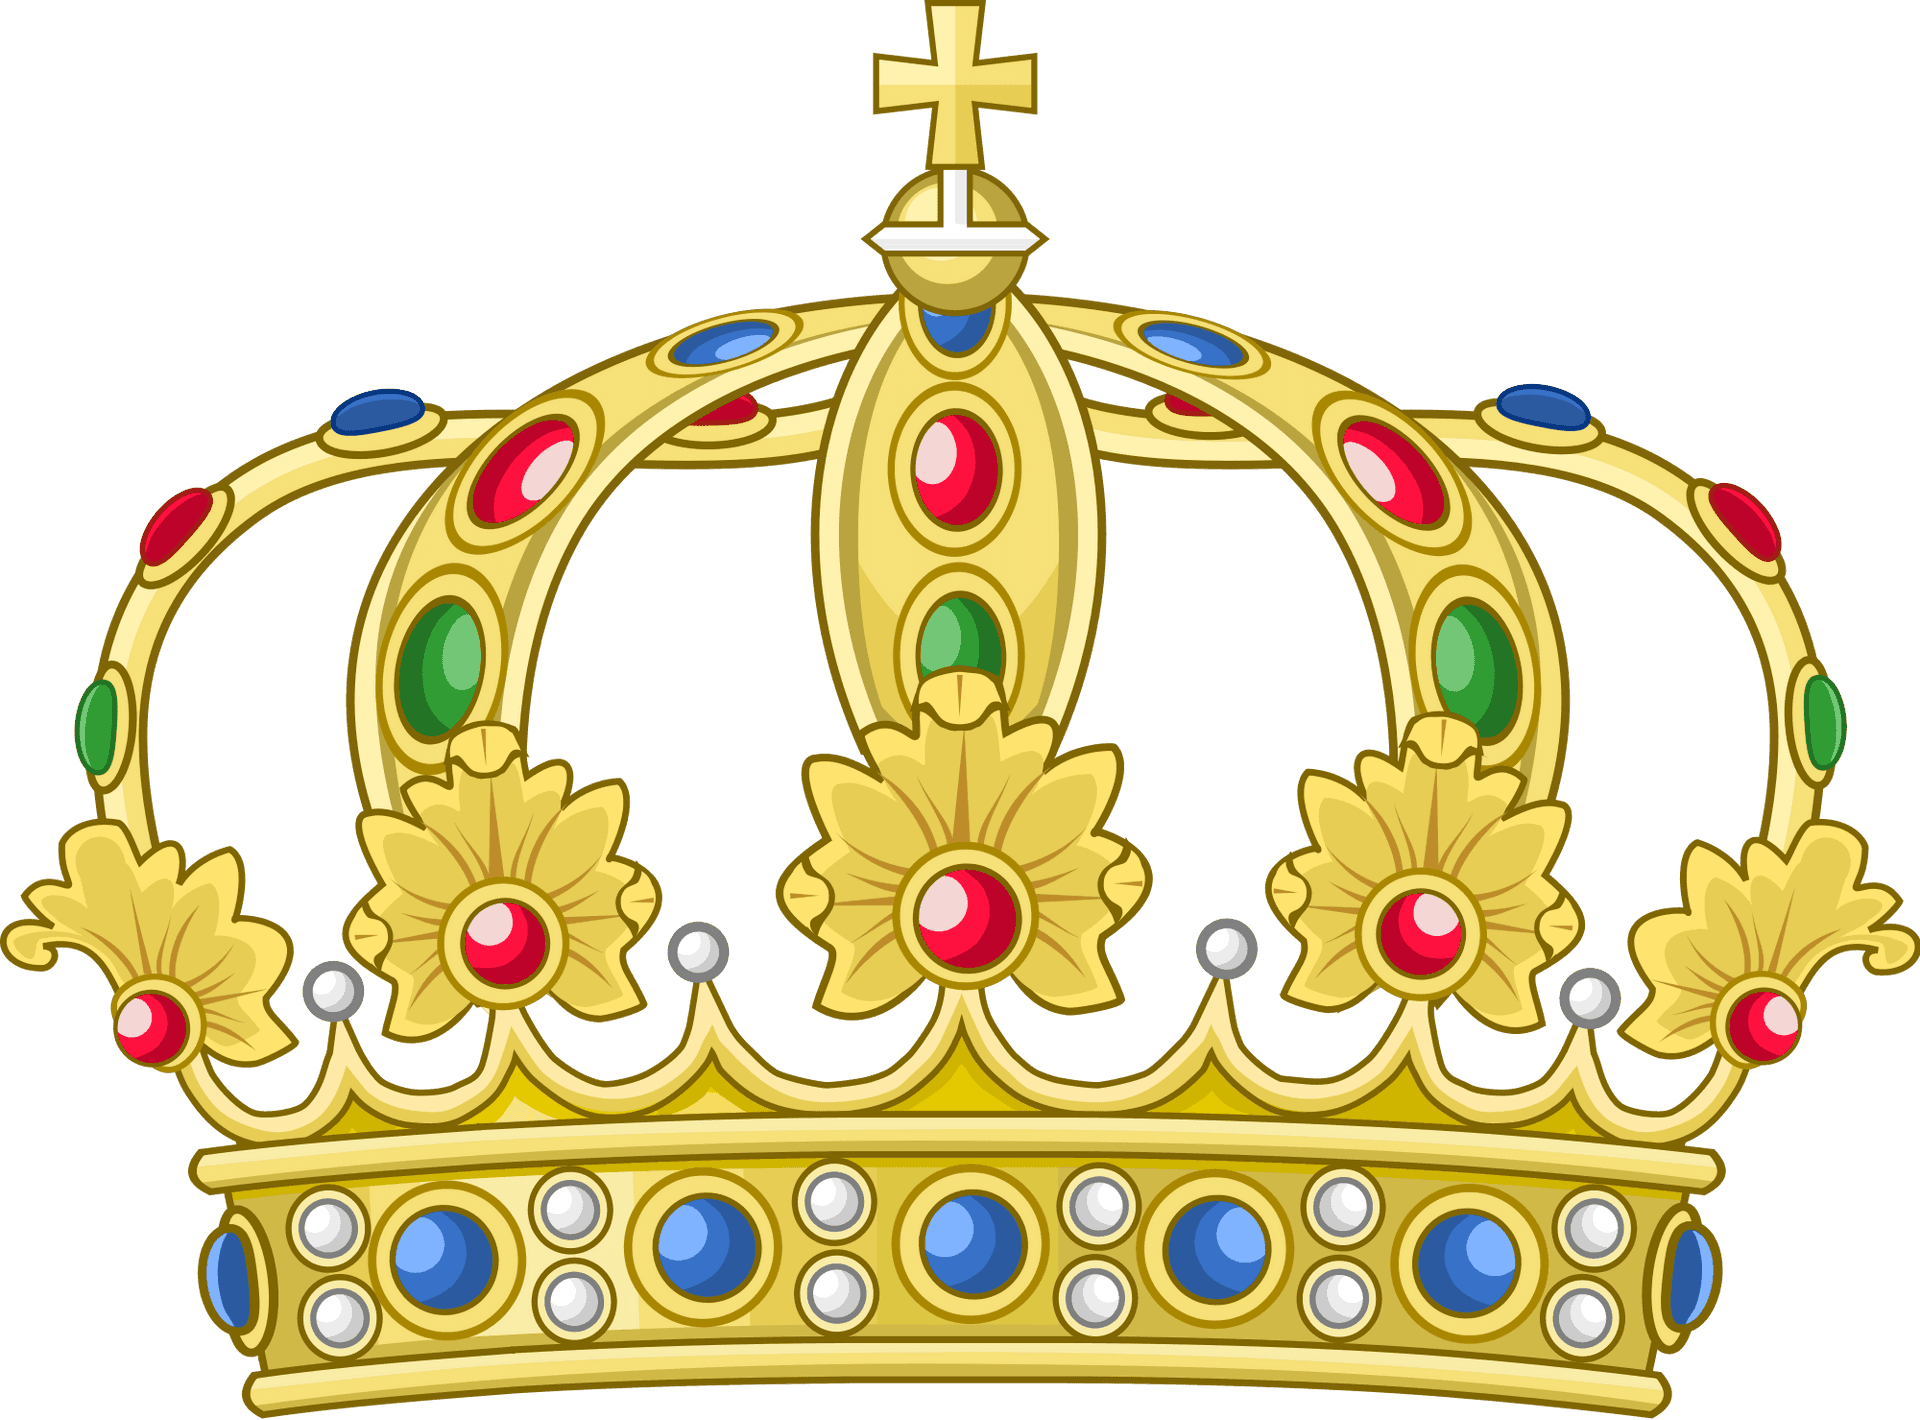 Golden Royal Crown Illustration PNG